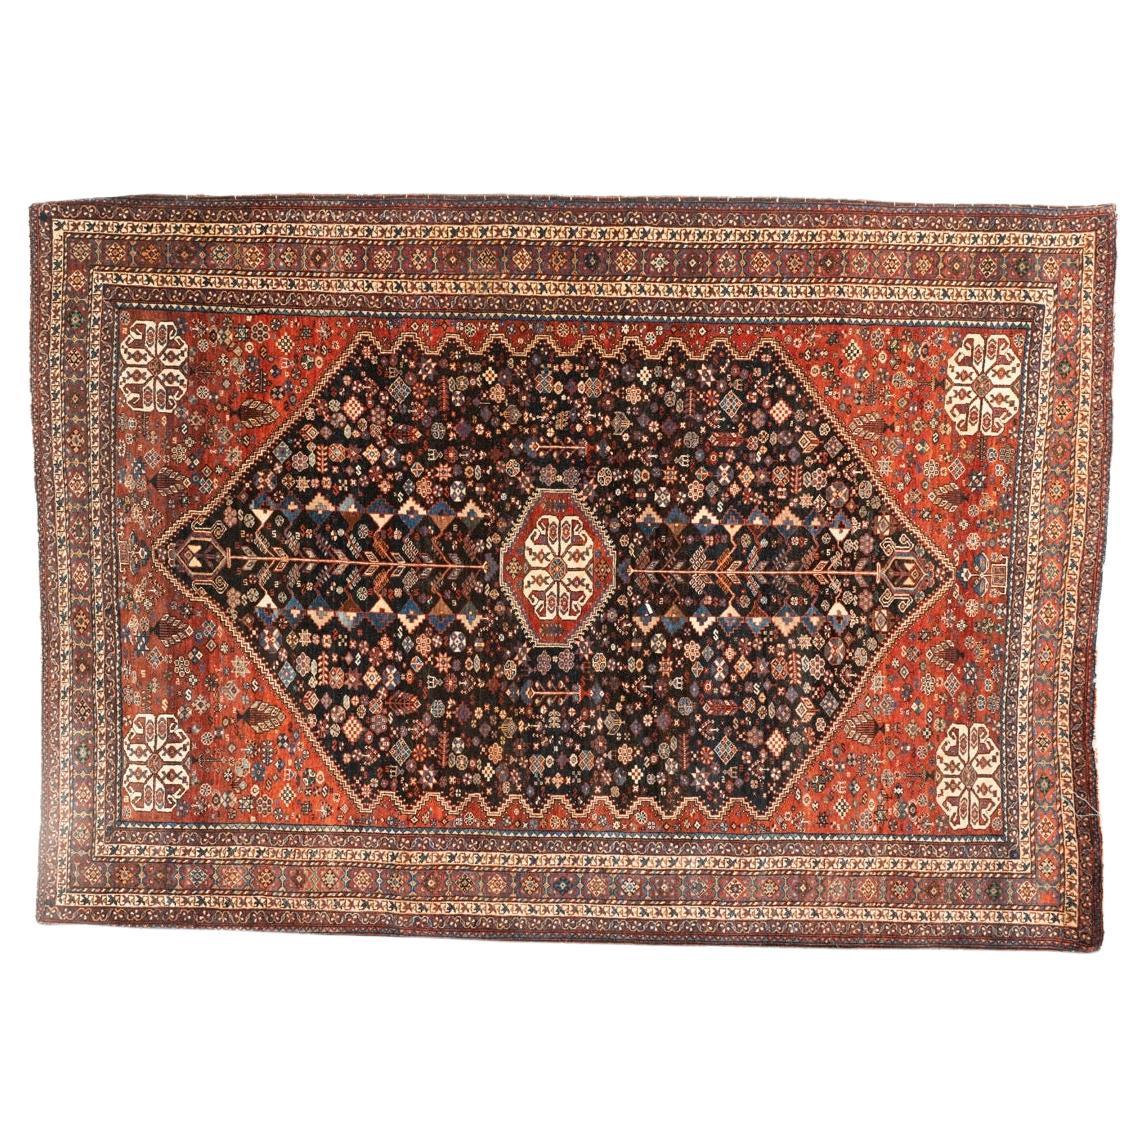 Antique Qasqai Carpet For Sale